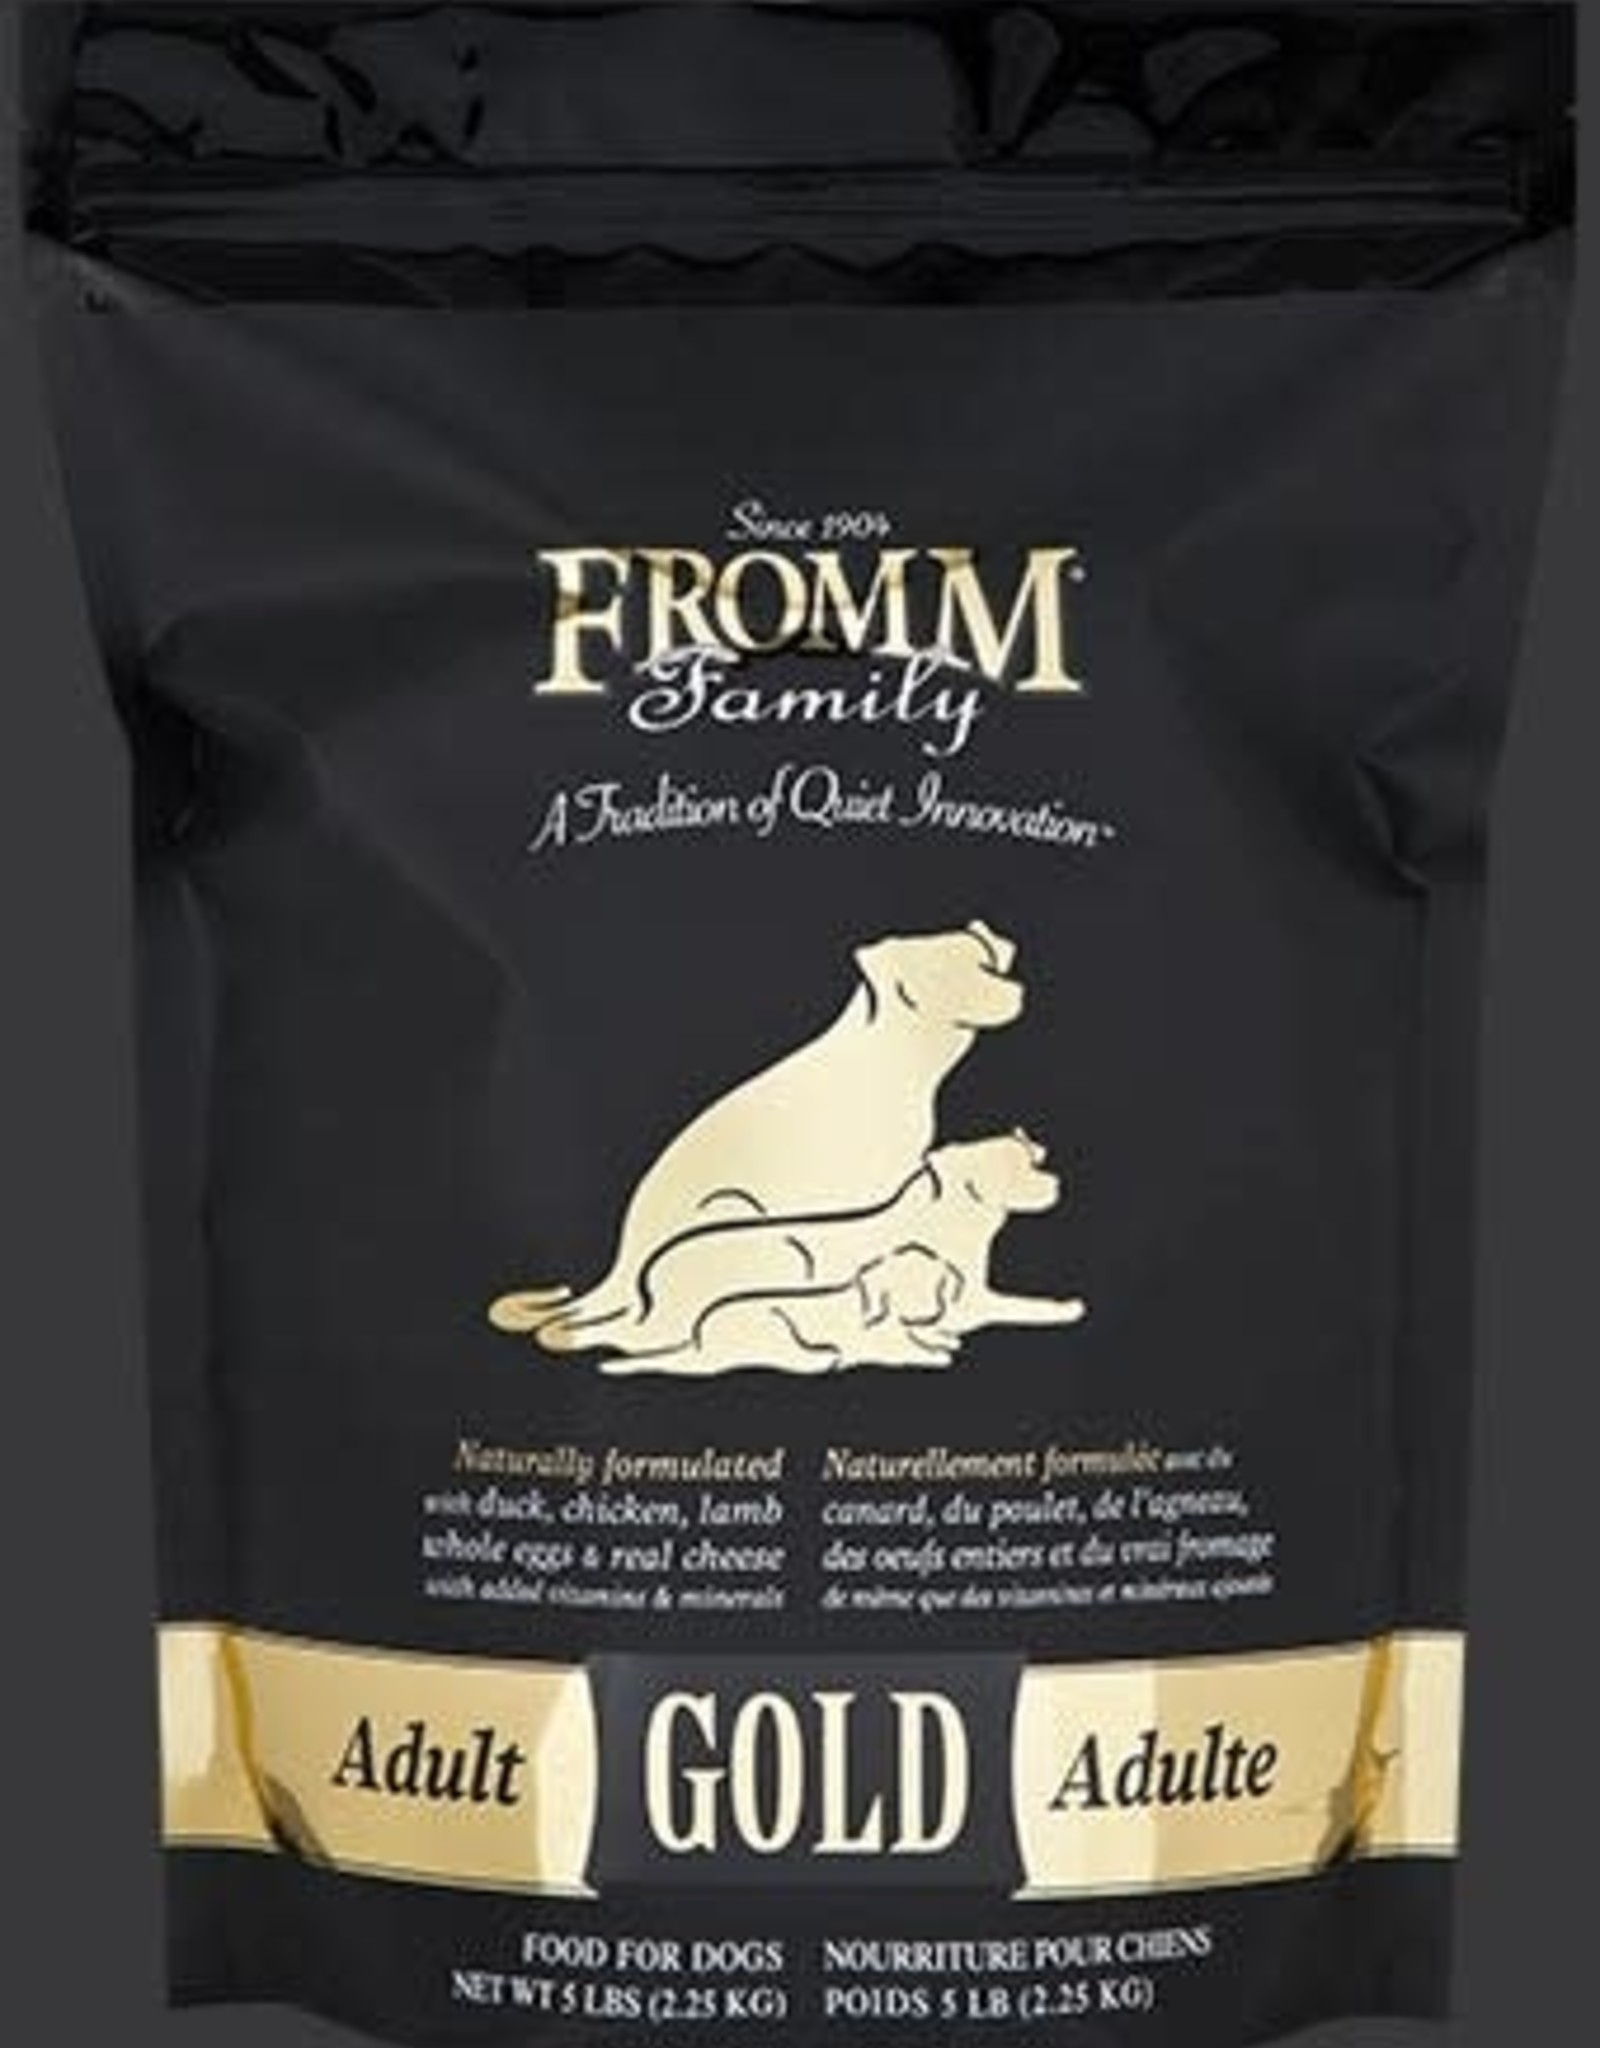 black gold dog food